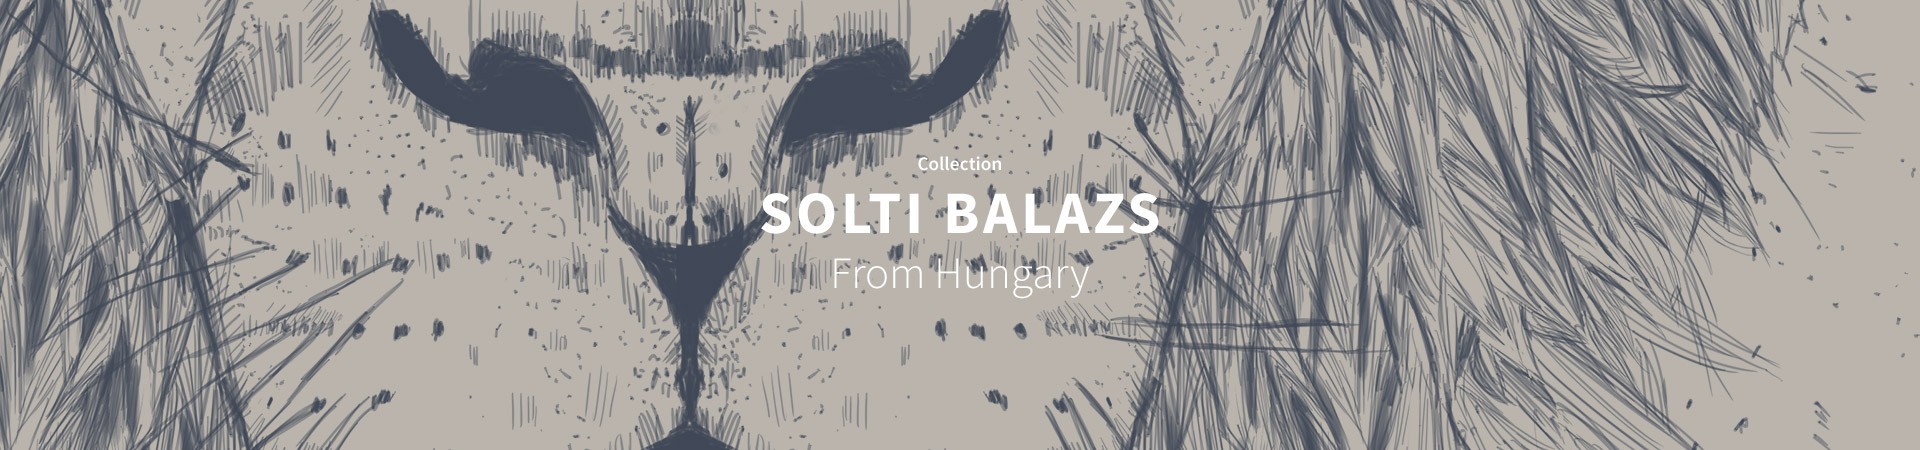 Solti Balazs